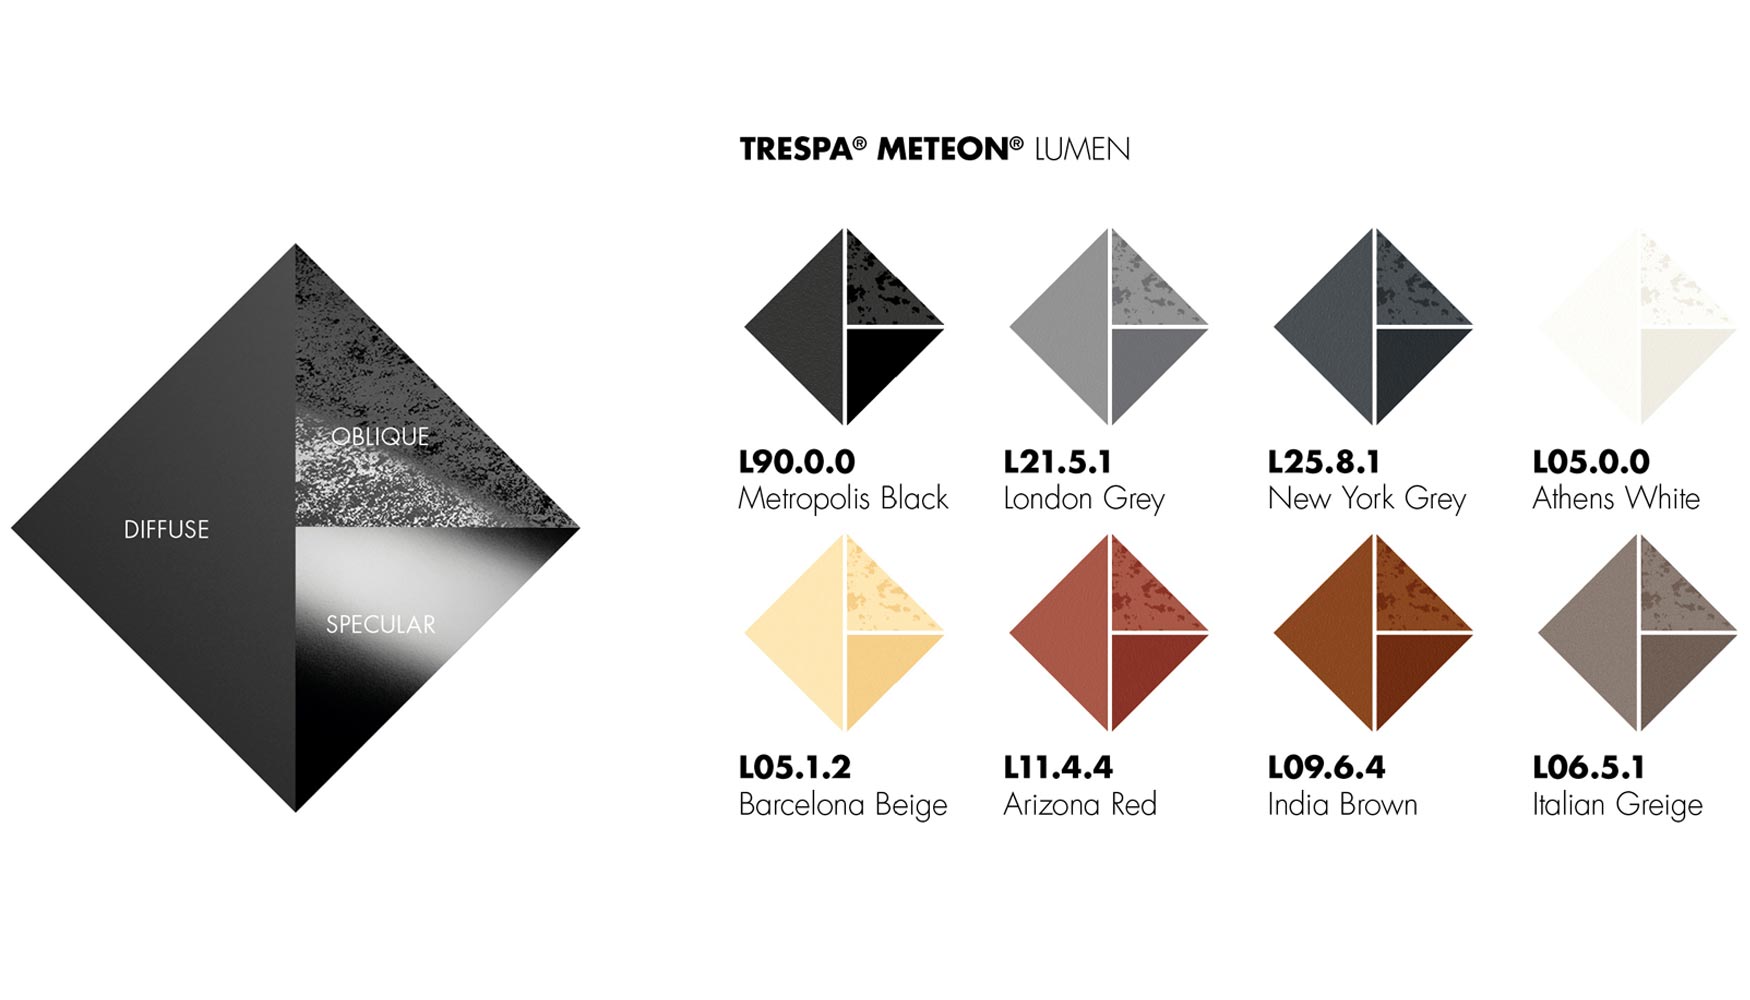 Trespa Meteon Lumen est disponible en tres variantes para ocho colores